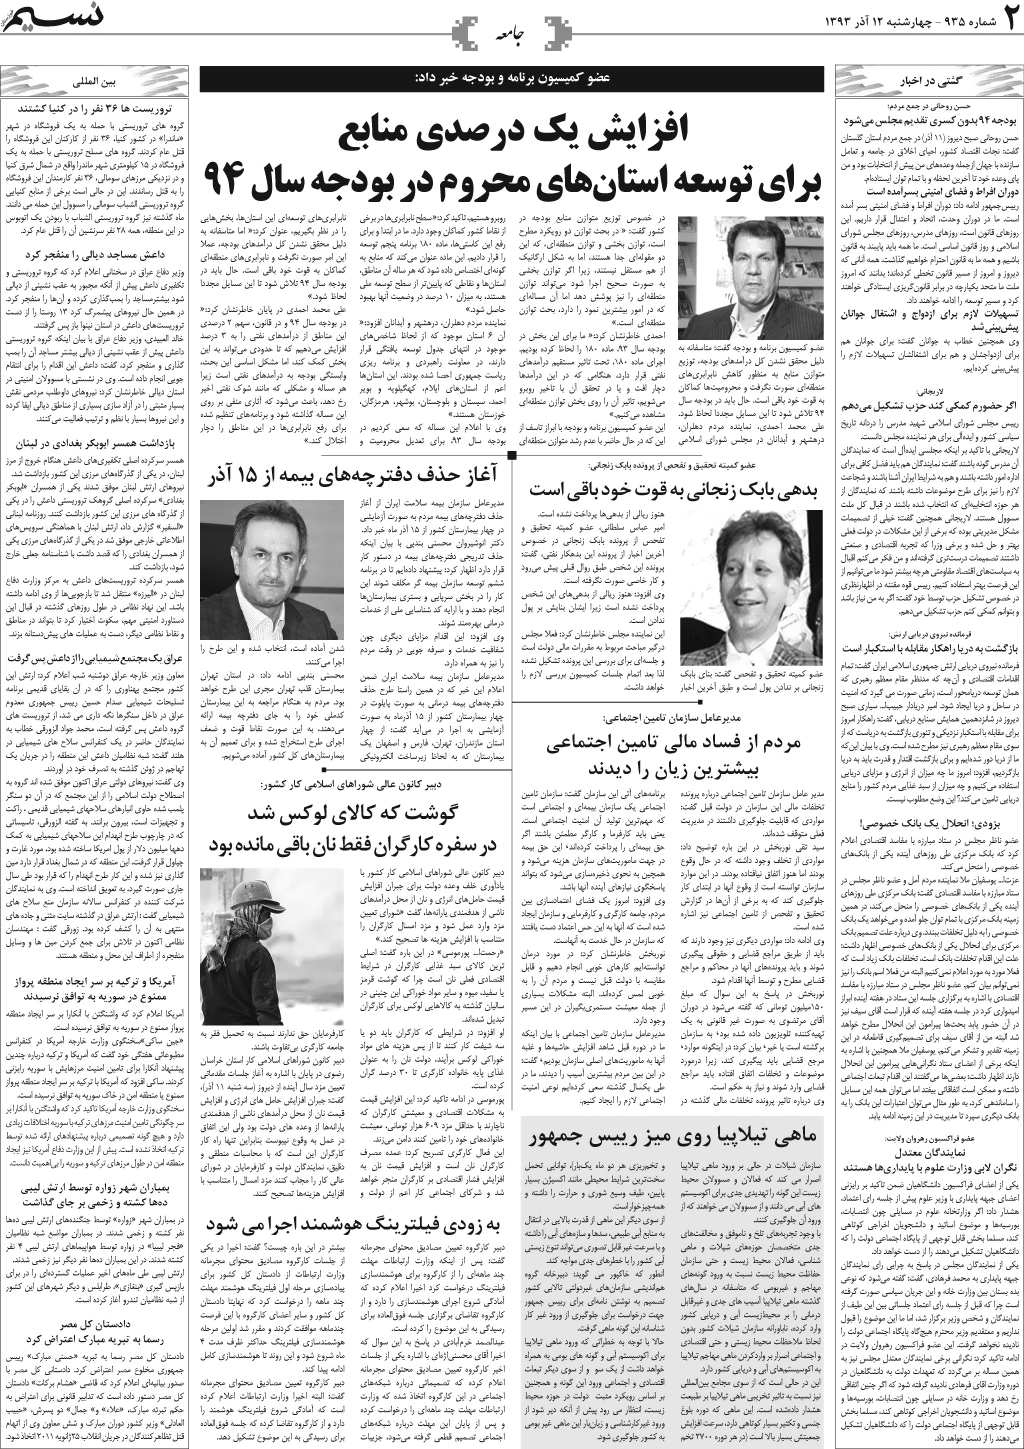 صفحه جامعه روزنامه نسیم شماره 935